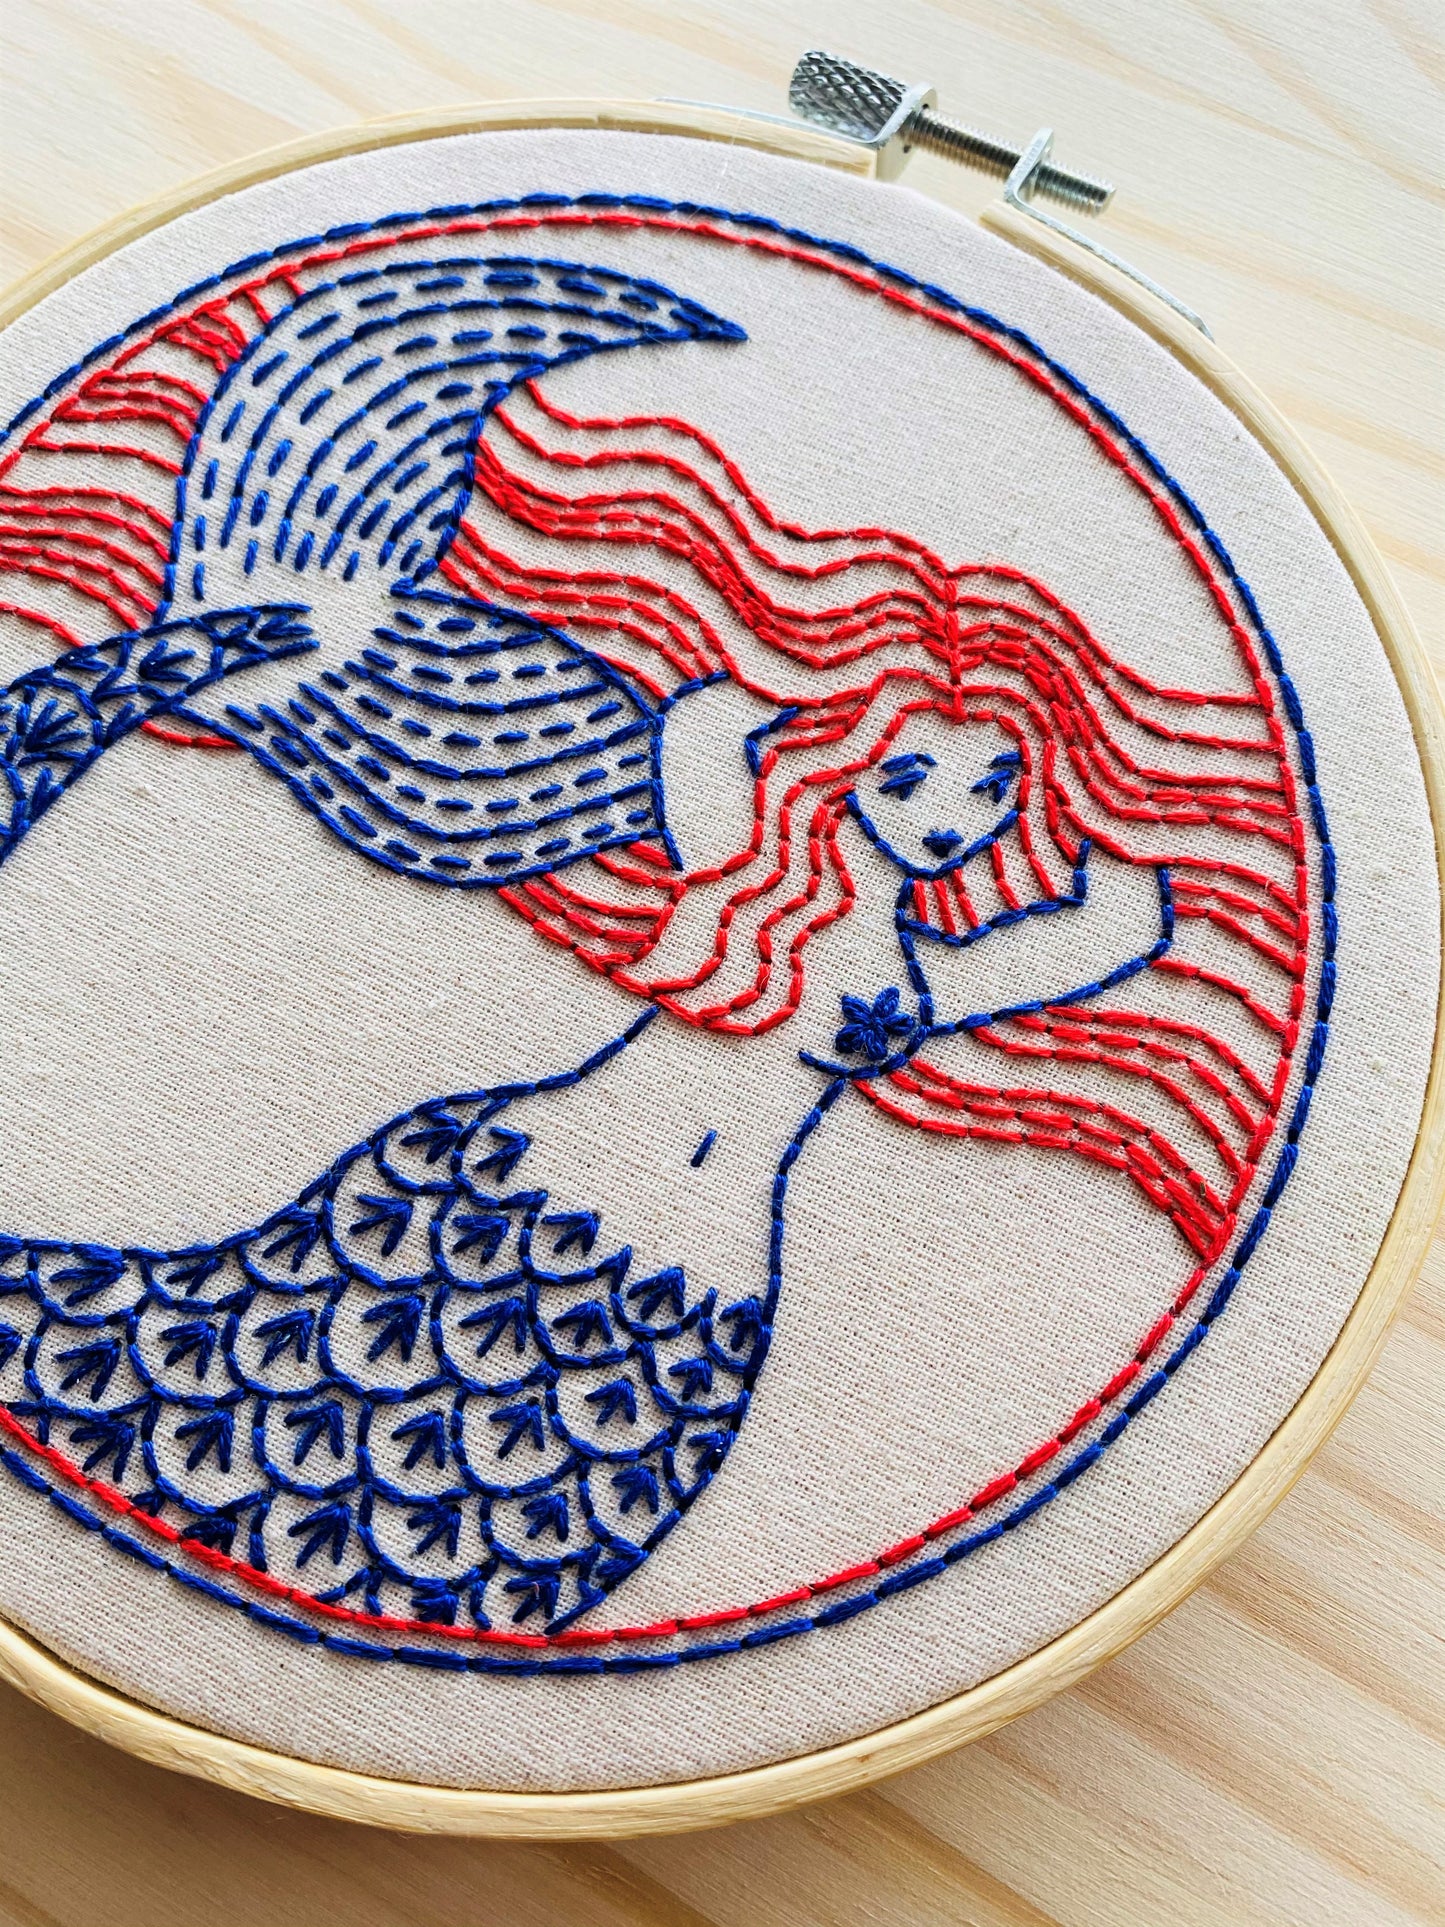 Mermaid Complete Embroidery Kit